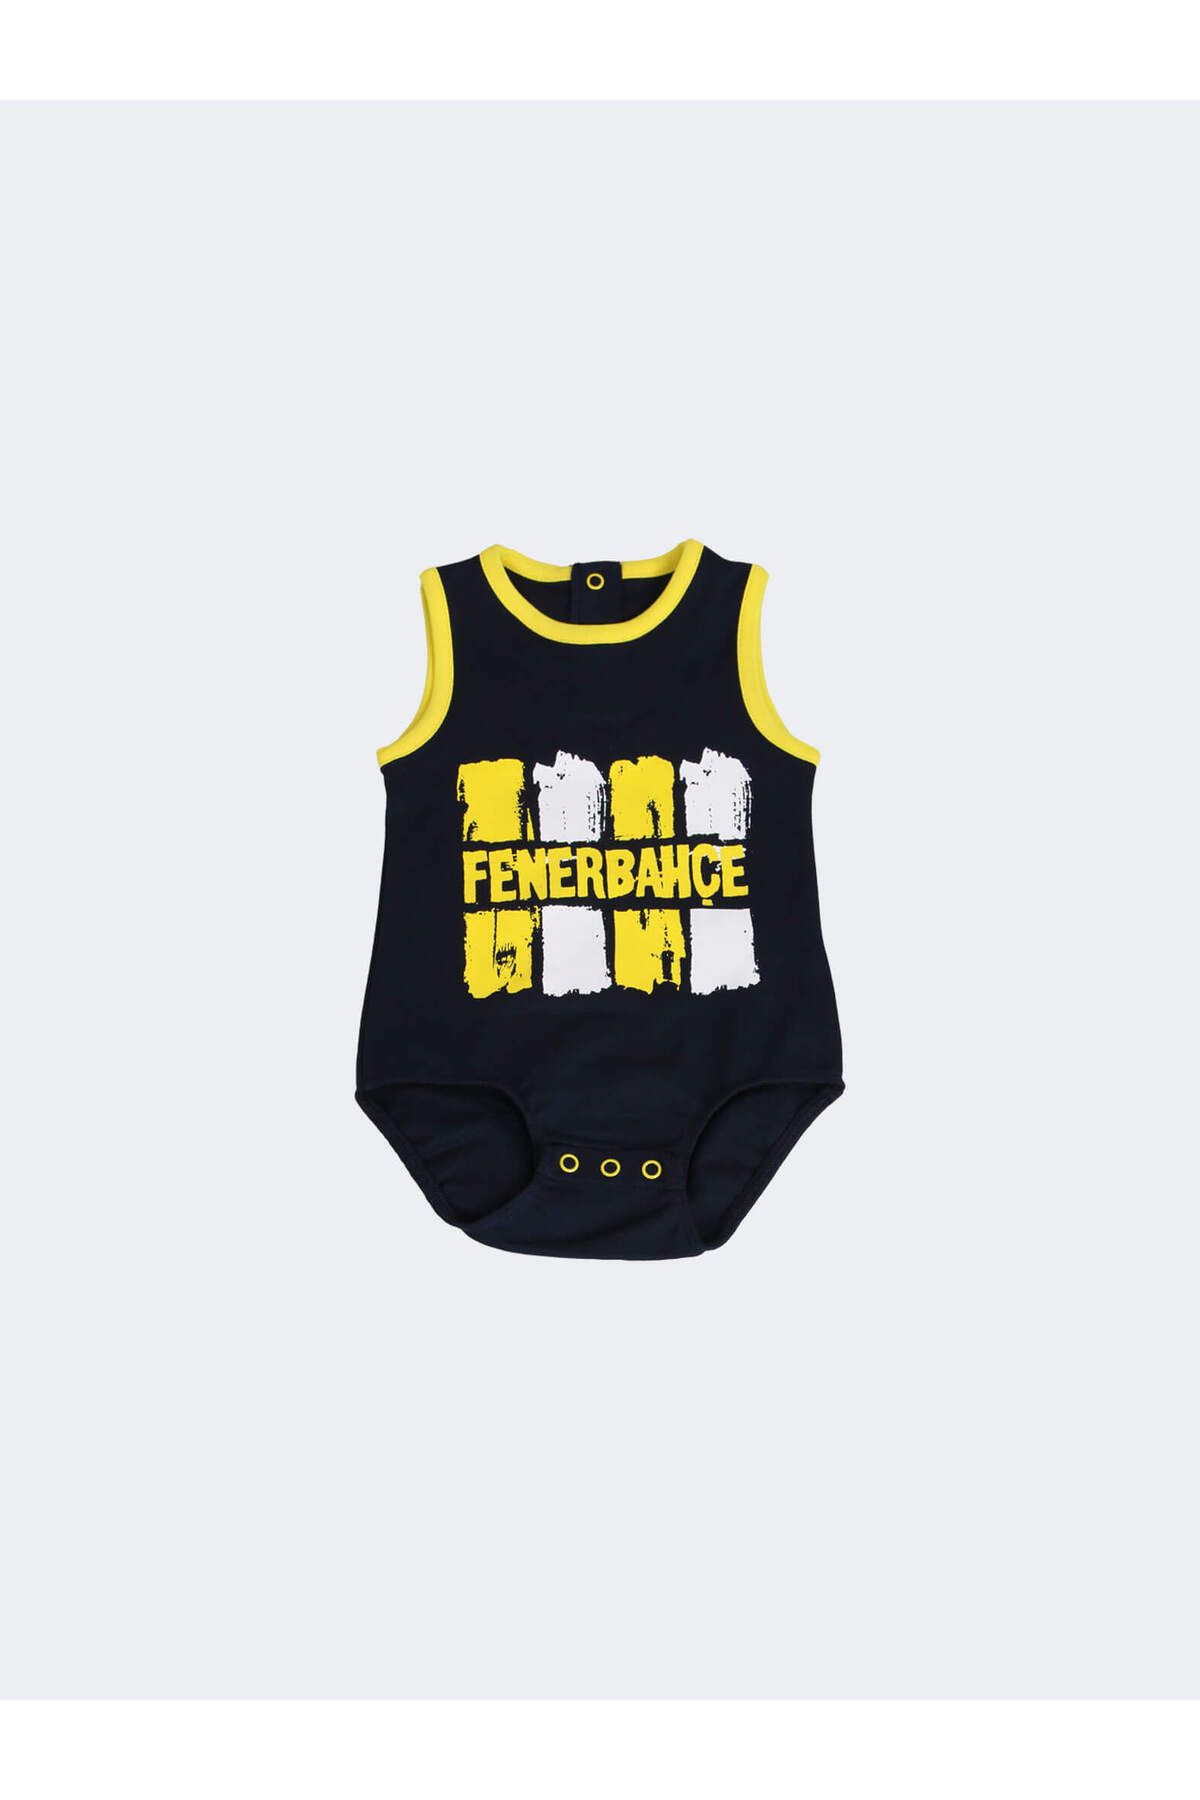 Fenerbahçe Bebek Çubuklu Body